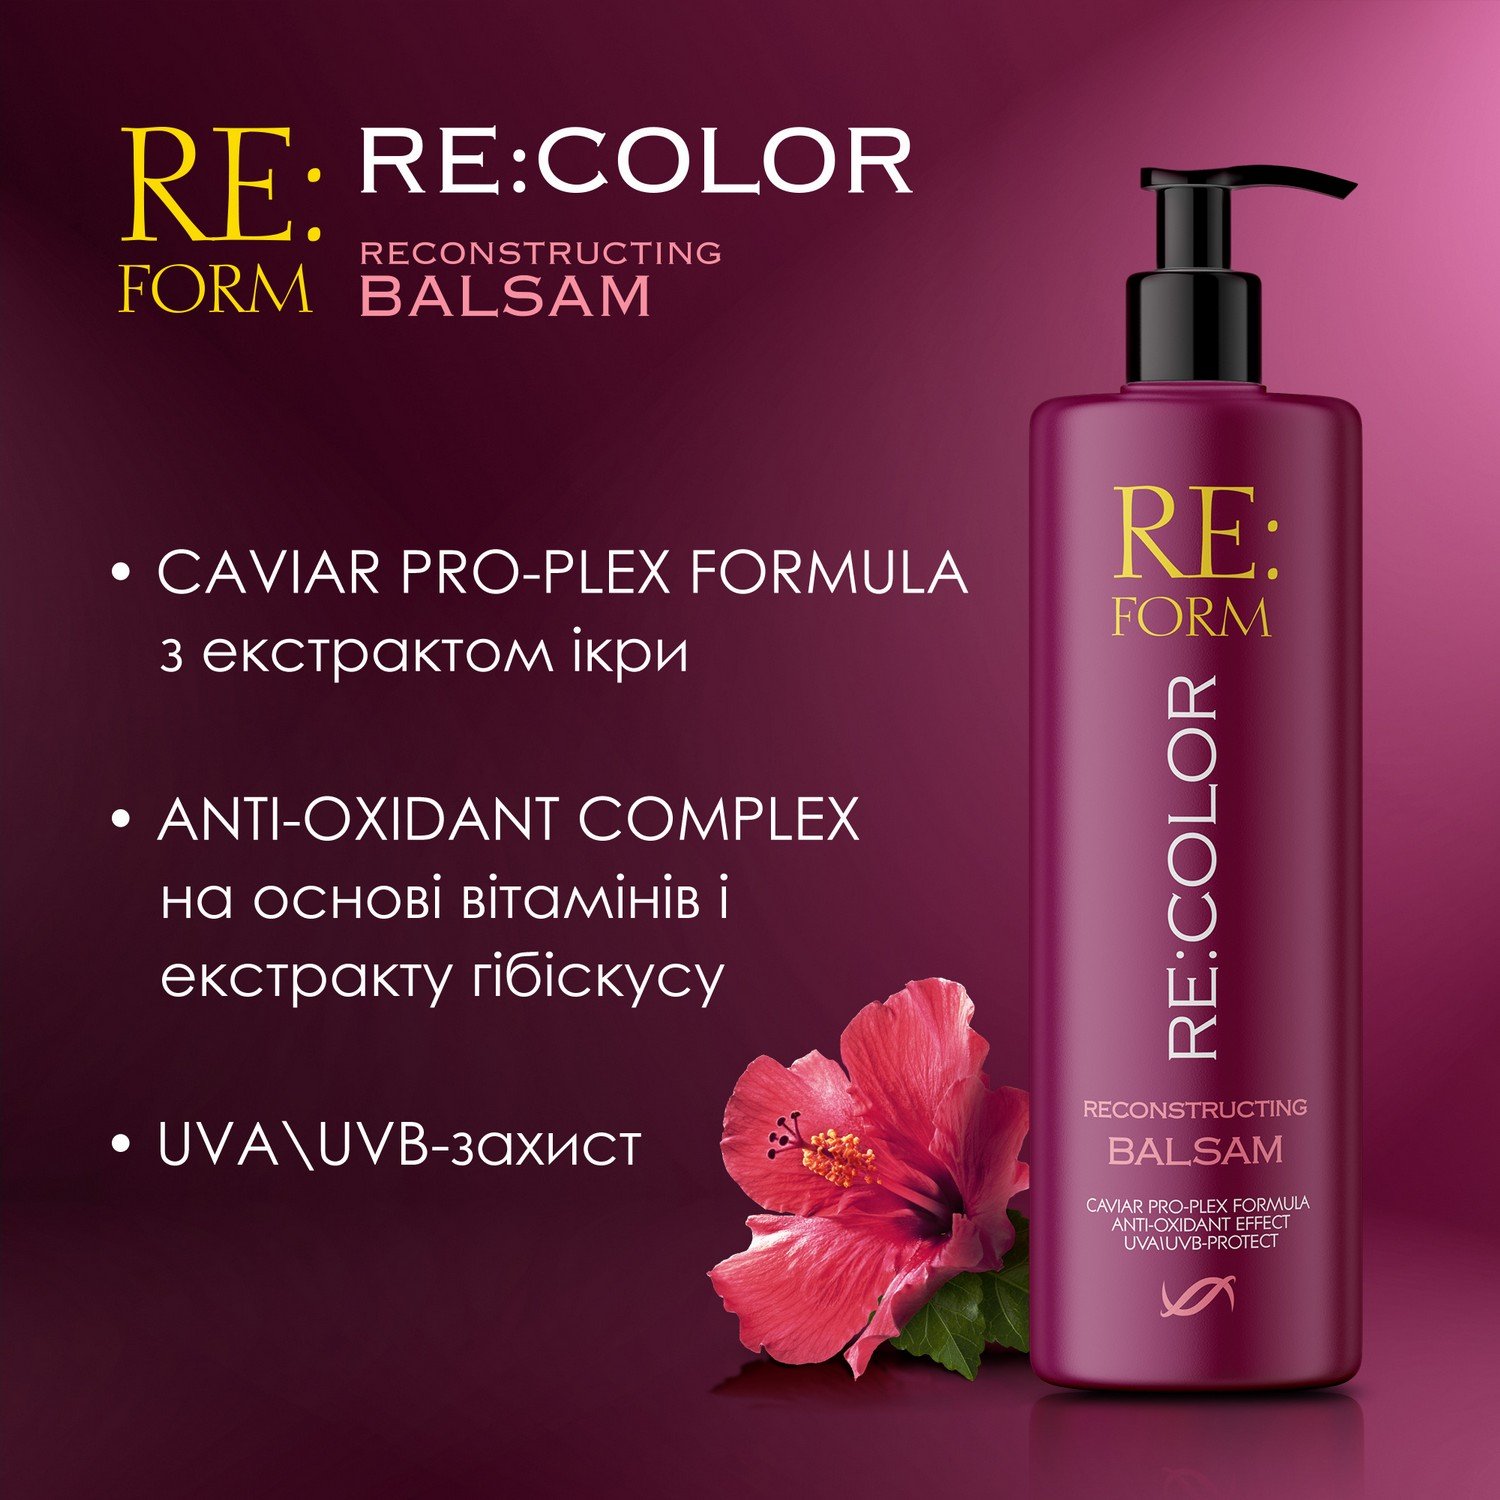 Реконструюючий бальзам Re:form Re:color Збереження кольору і відновлення фарбованого волосся, 400 мл - фото 5